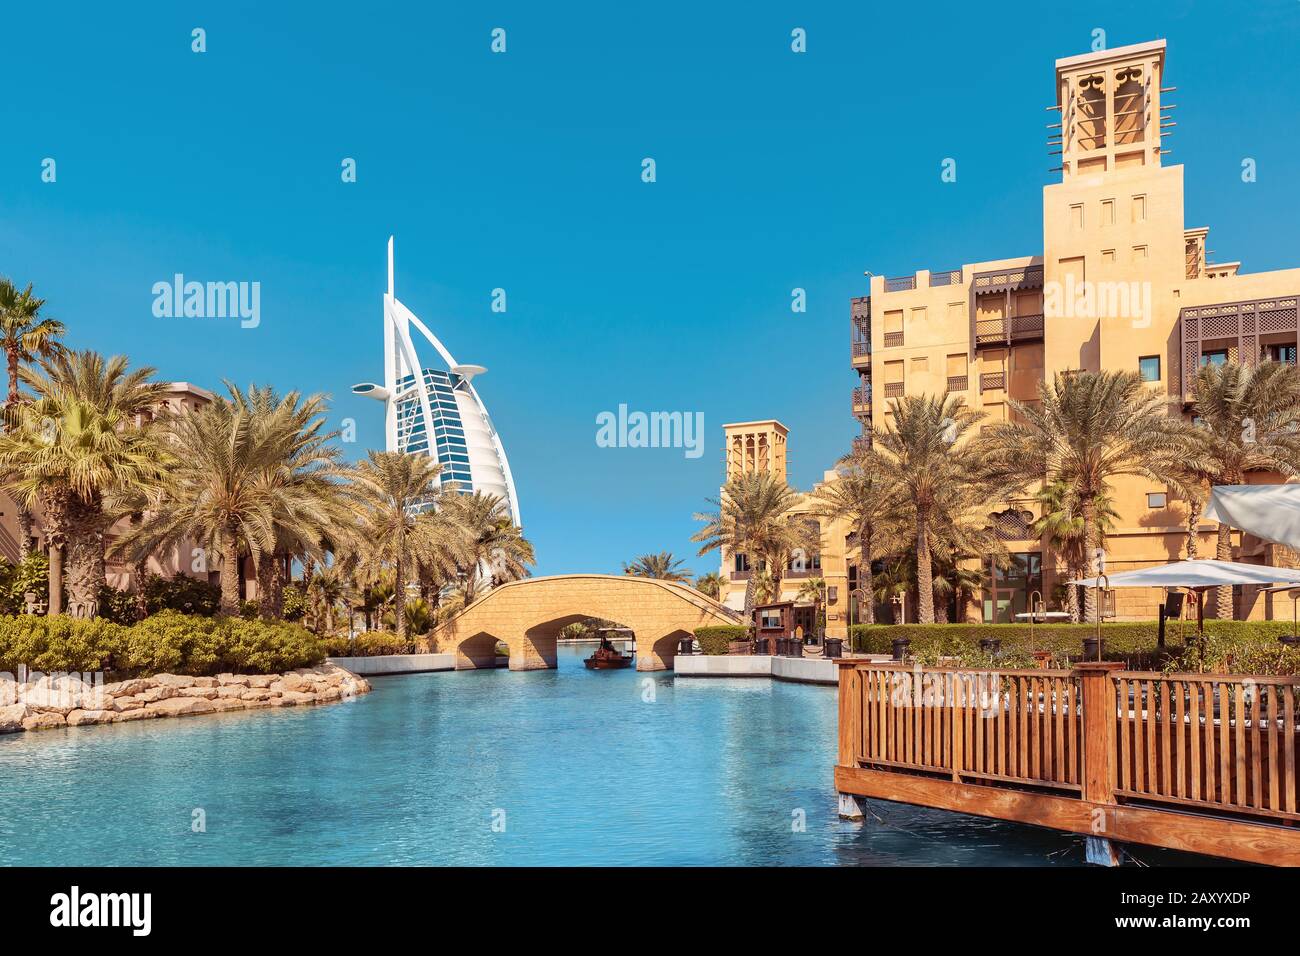 Vista dell'elegante hotel a sette stelle Burj al Arab a forma di vela e del canale artificiale con un ponte Foto Stock